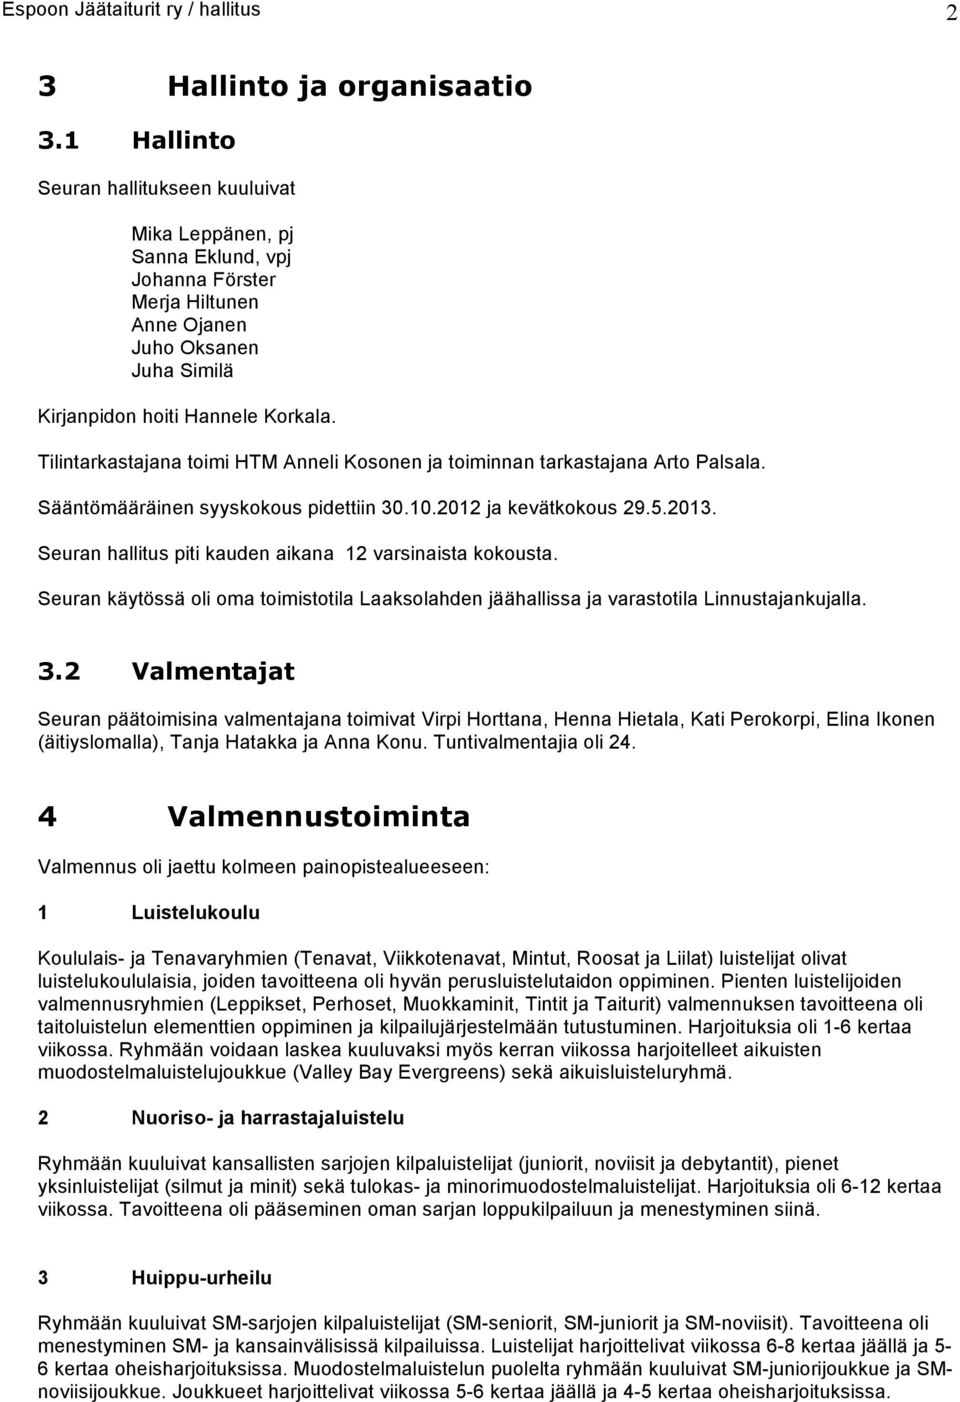 Tilintarkastajana toimi HTM Anneli Kosonen ja toiminnan tarkastajana Arto Palsala. Sääntömääräinen syyskoko pidettiin 30.10.2012 ja kevätkoko 29.5.2013.